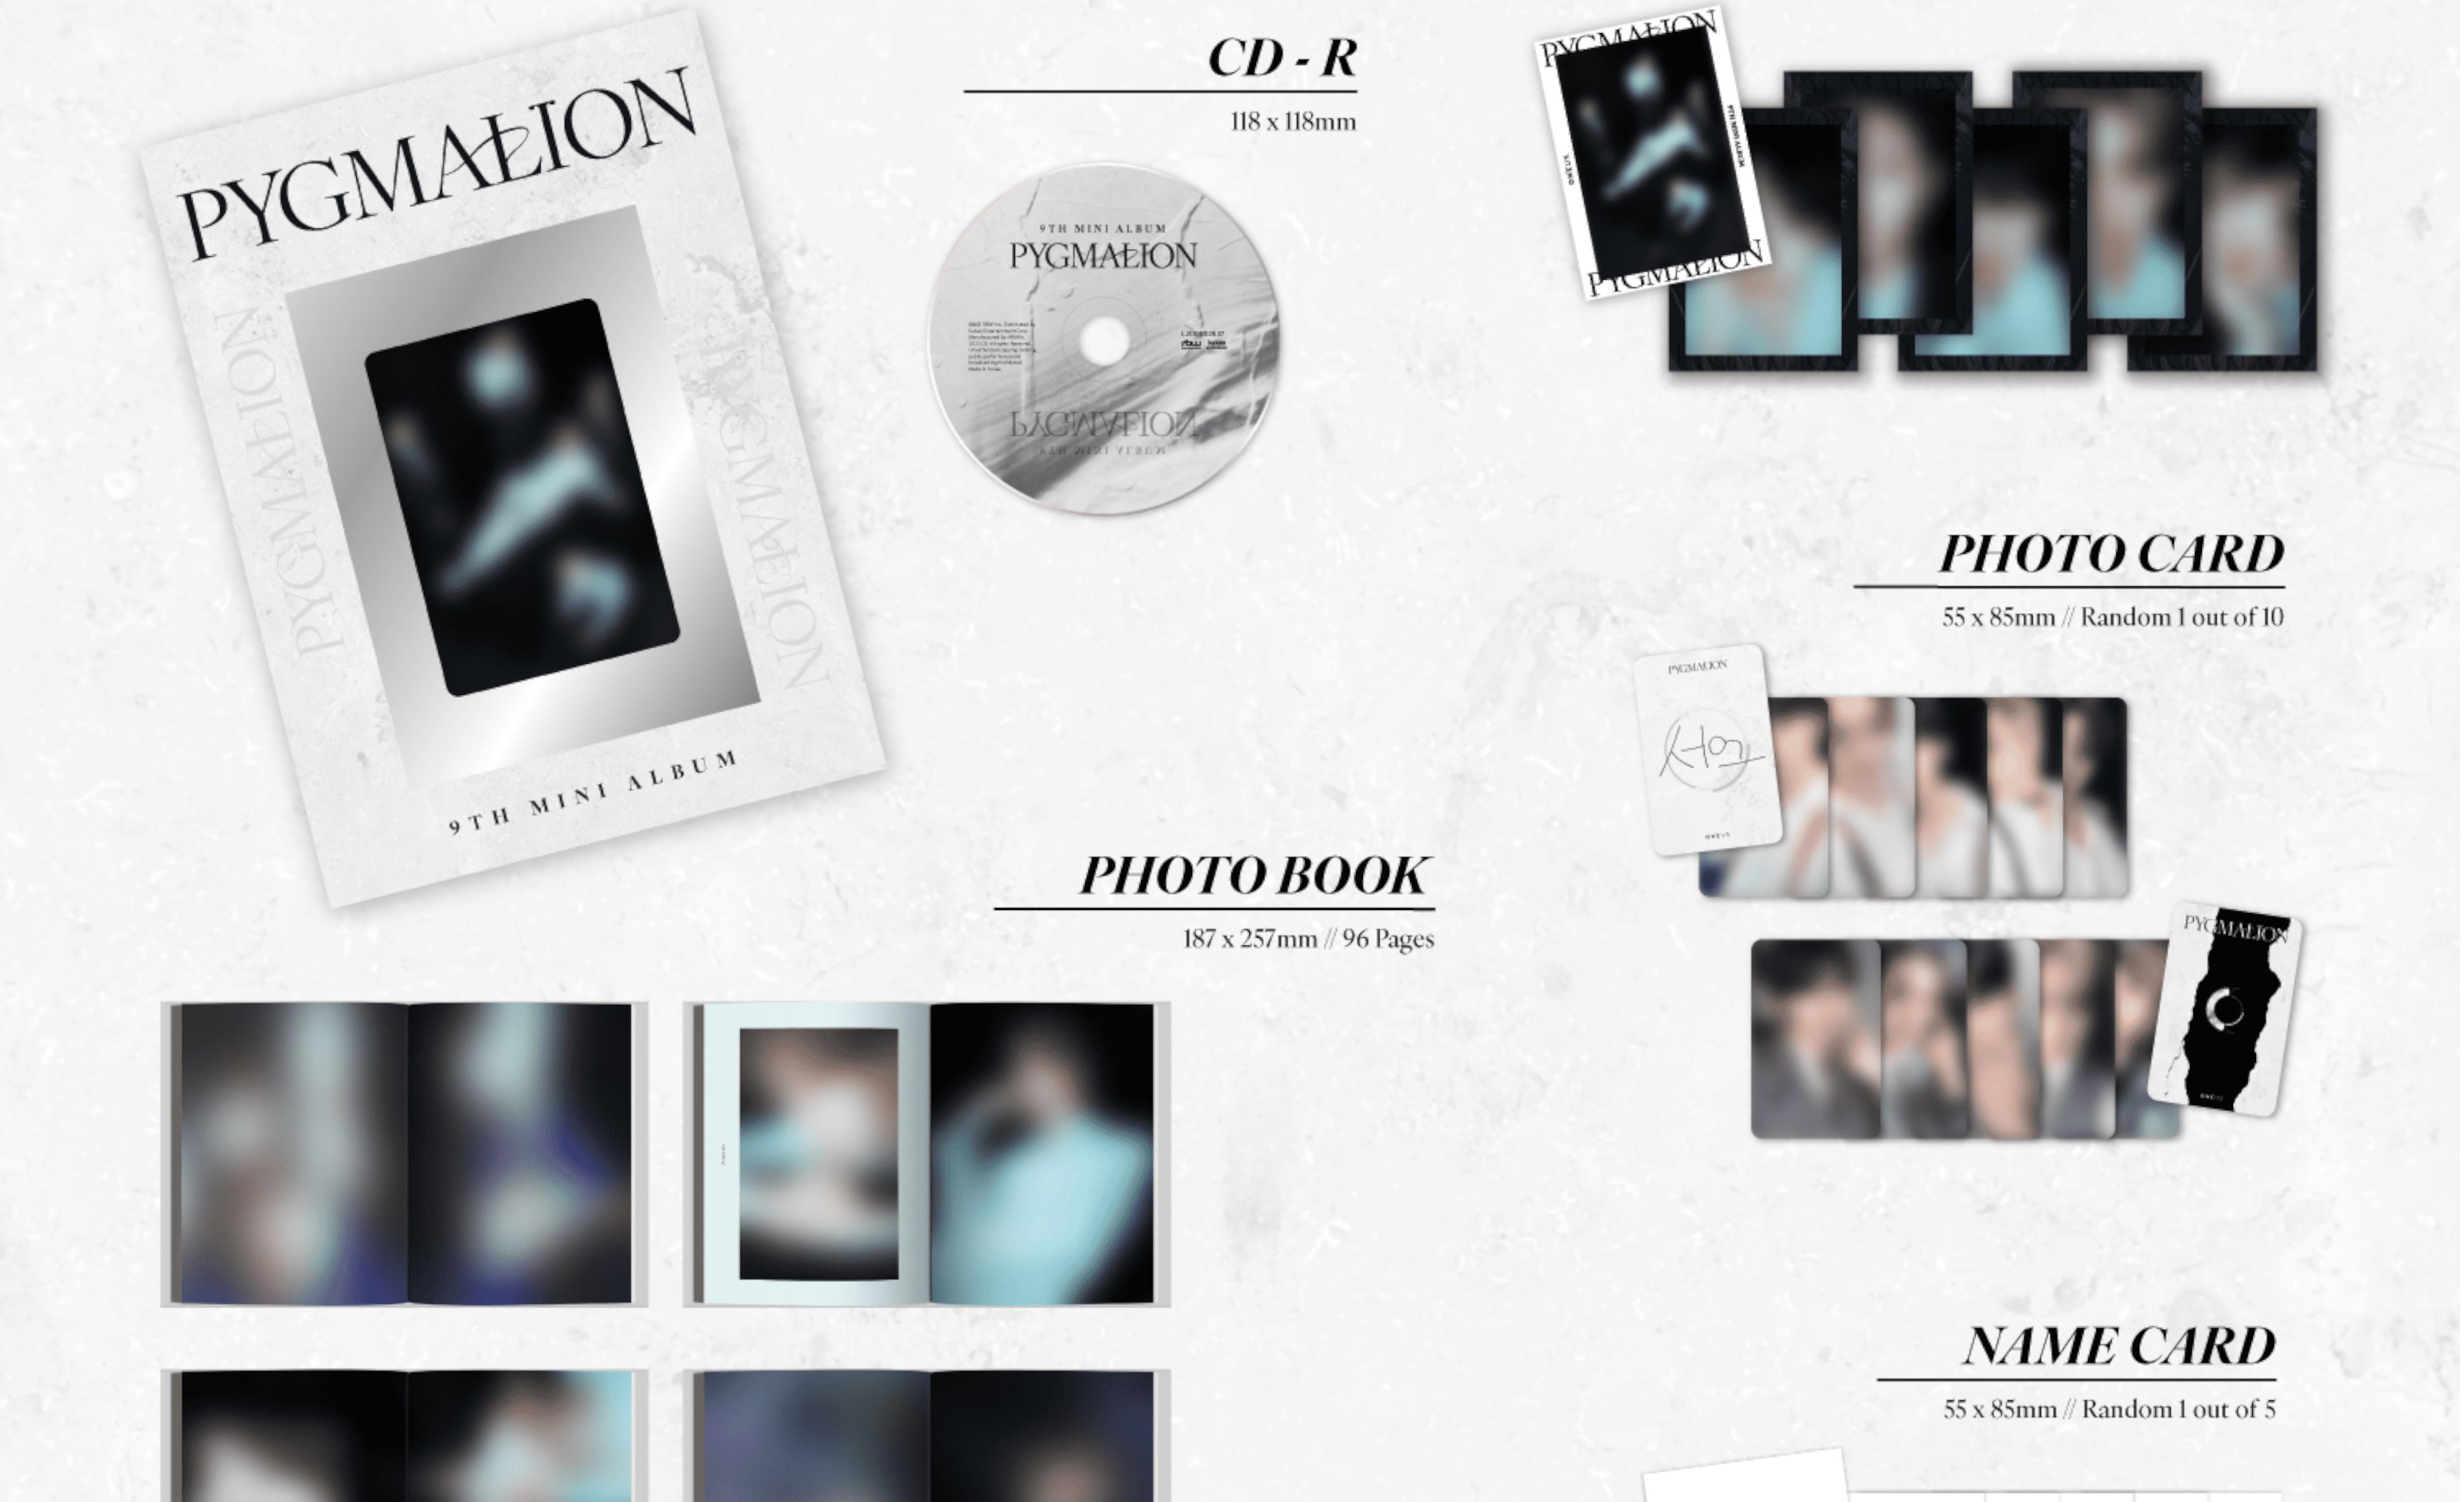 PYGMALION ist das erste ONEUS Album mit fünf Mitgliedern!